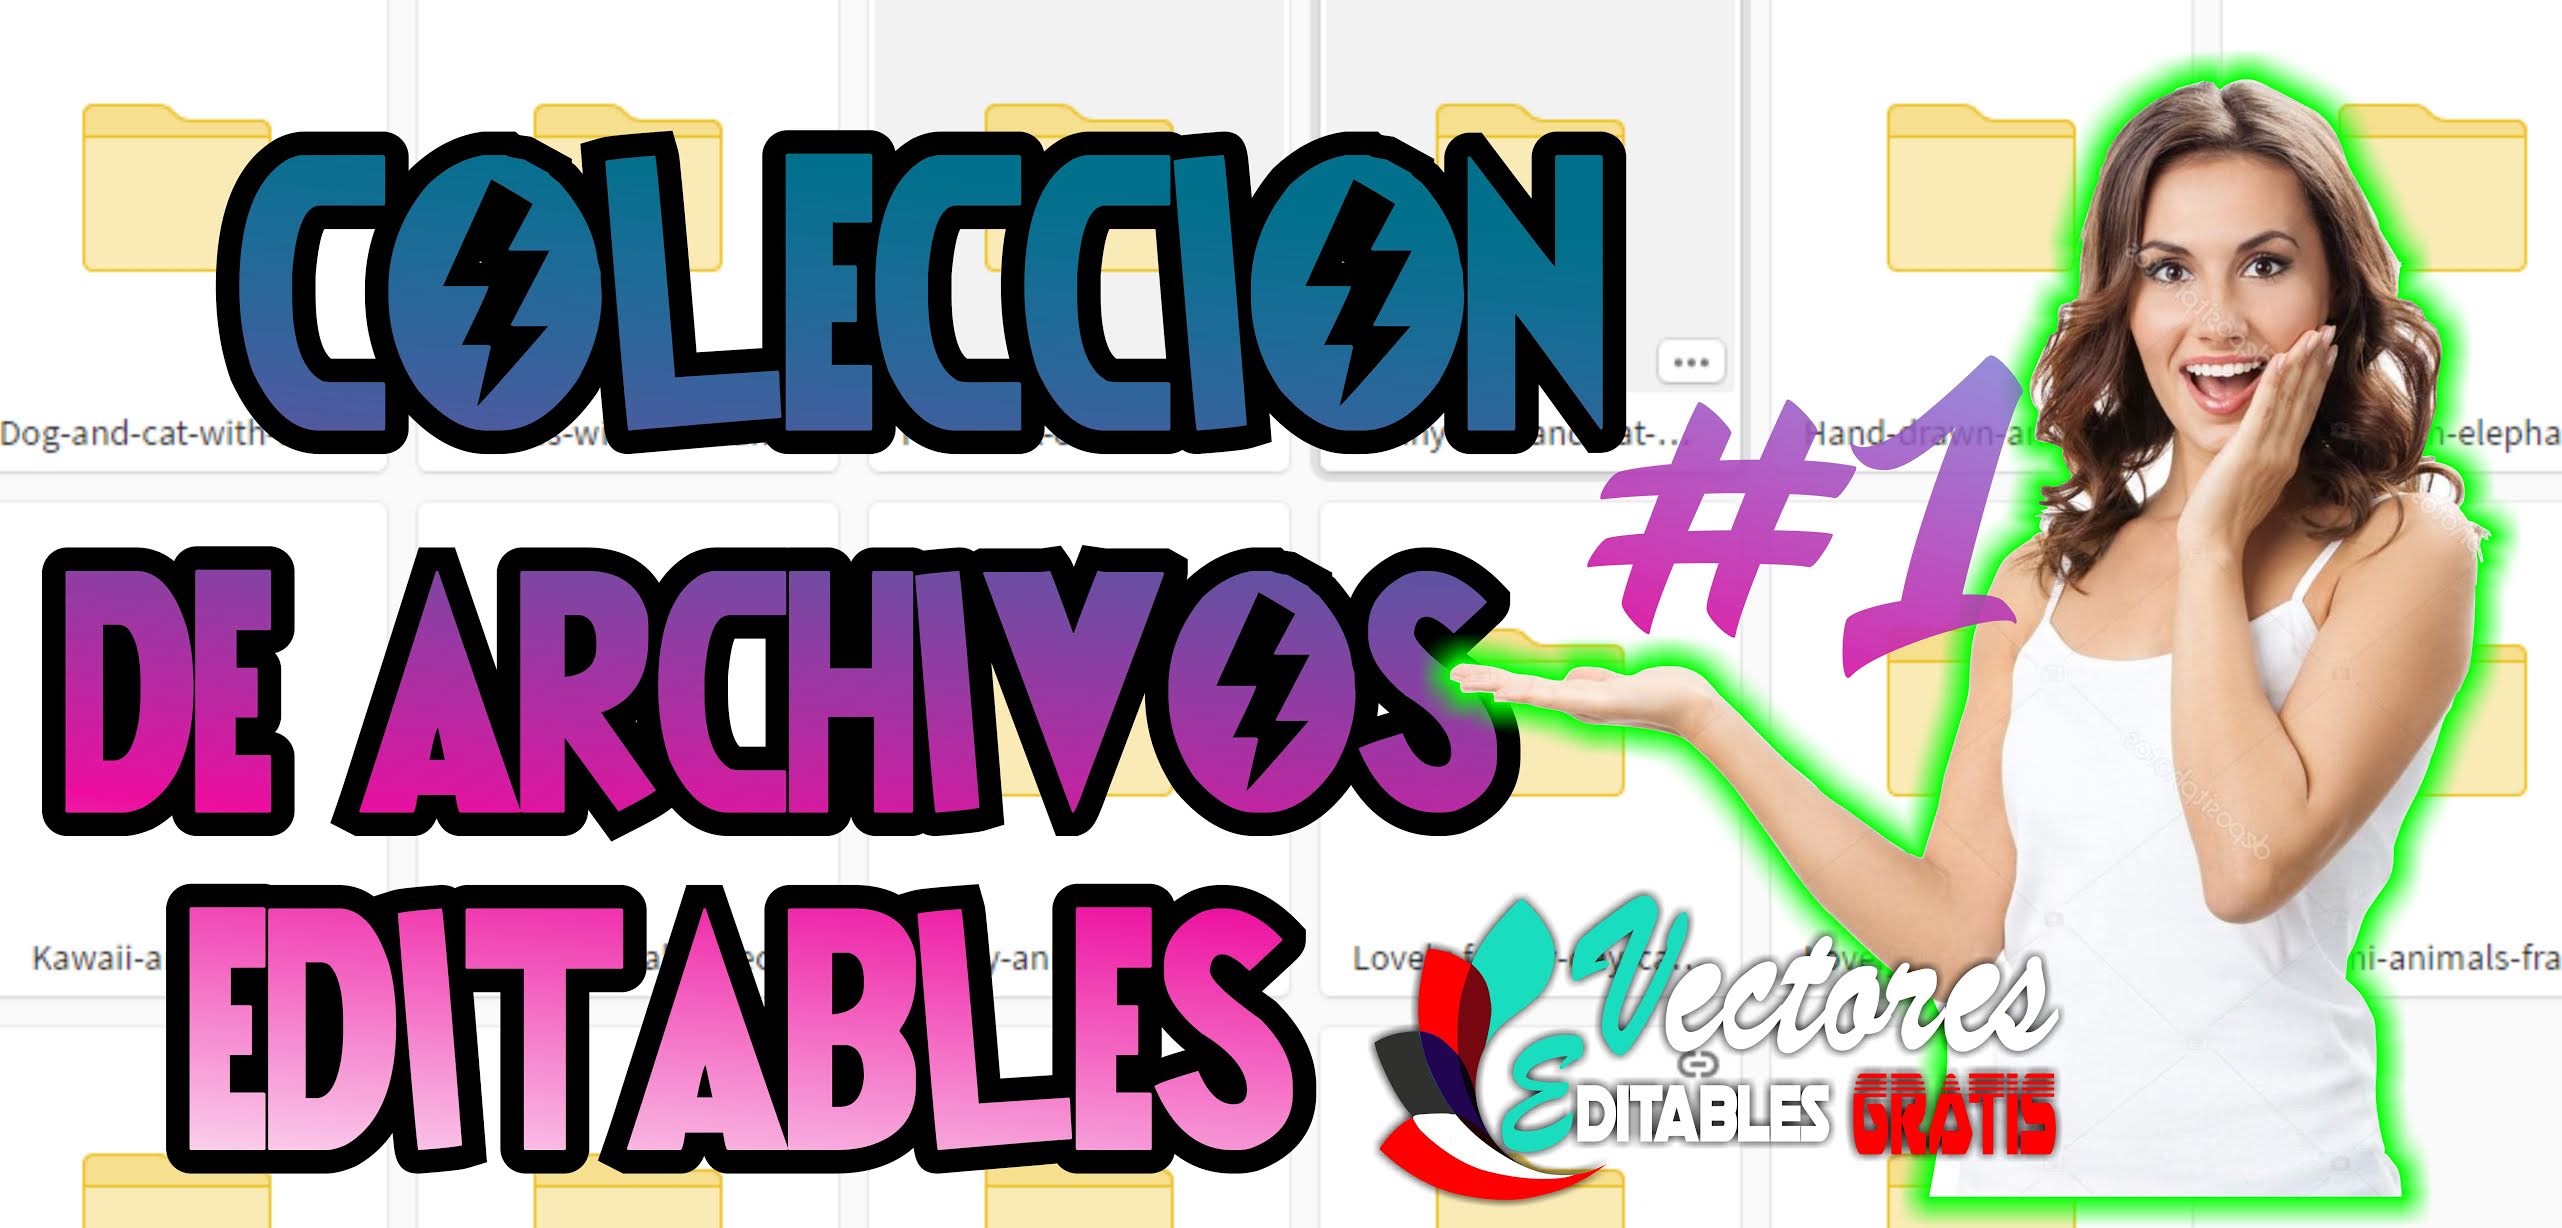 COLECCION DE ARCHIVOS #1 FULL EDITABLES GRATIS